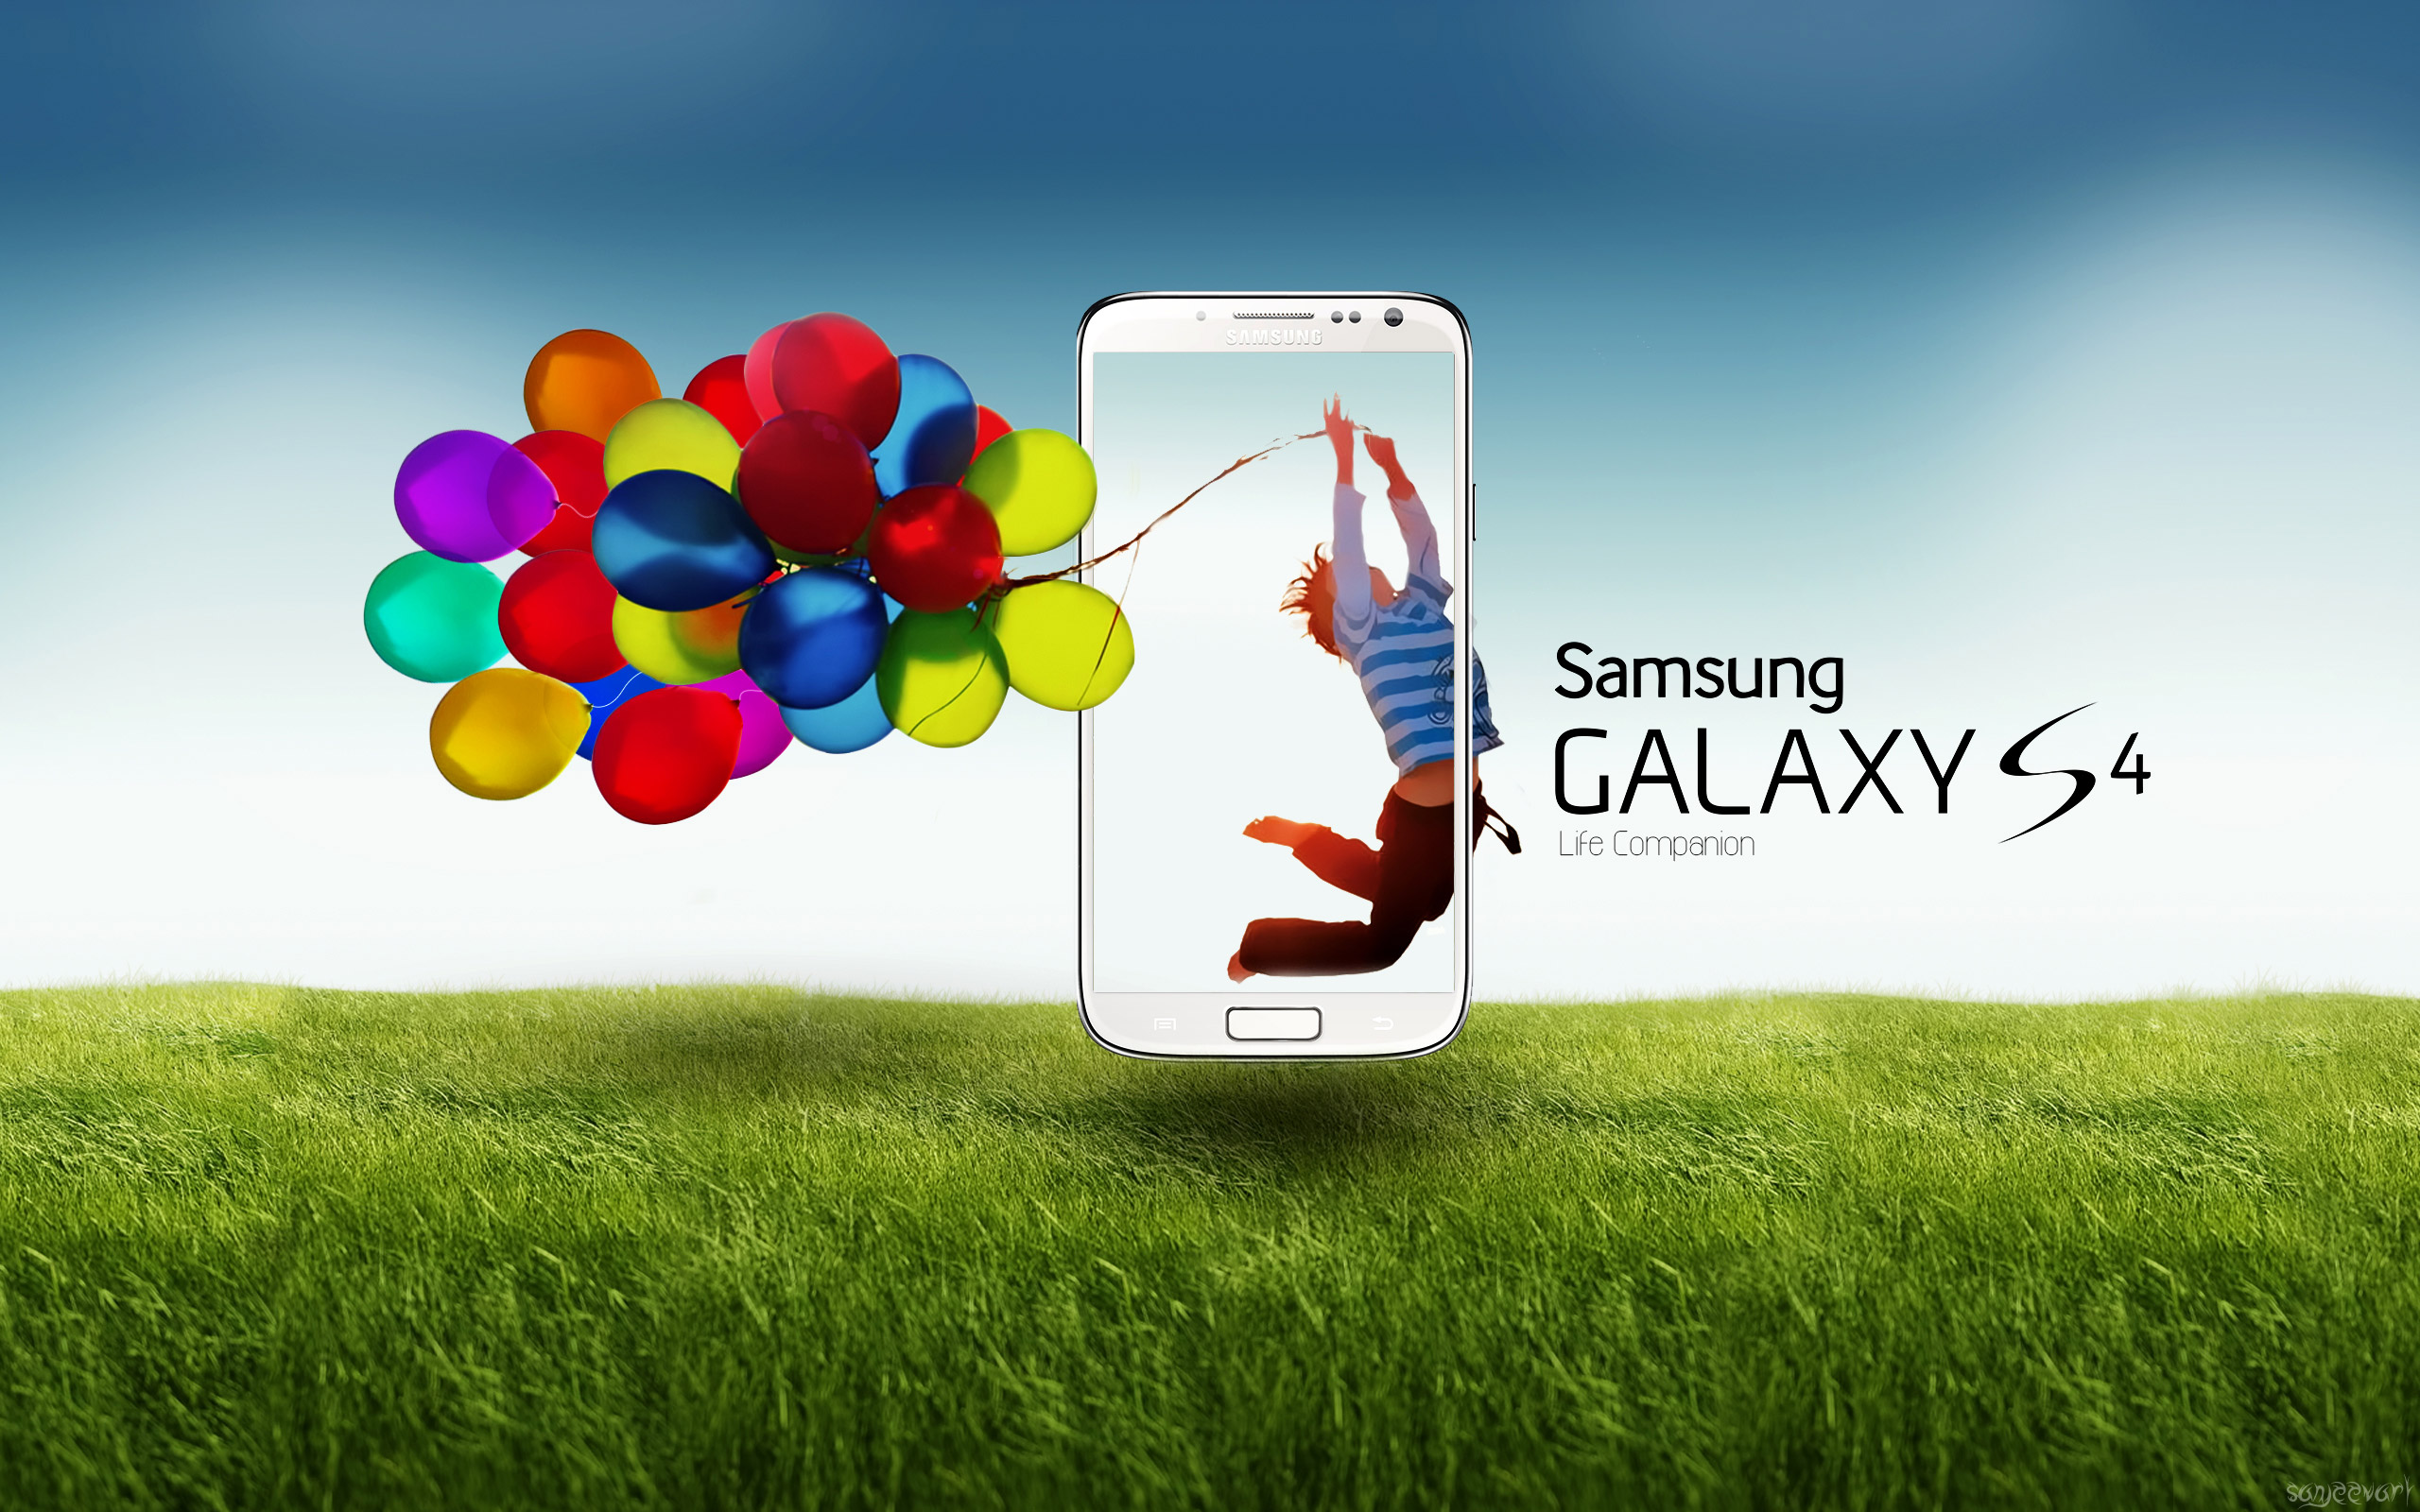 Телефон про фон. Самсунг галакси с4. Самсунг галакси s4 реклама. Телефон Samsung Galaxy s4. Samsung s4 Max.